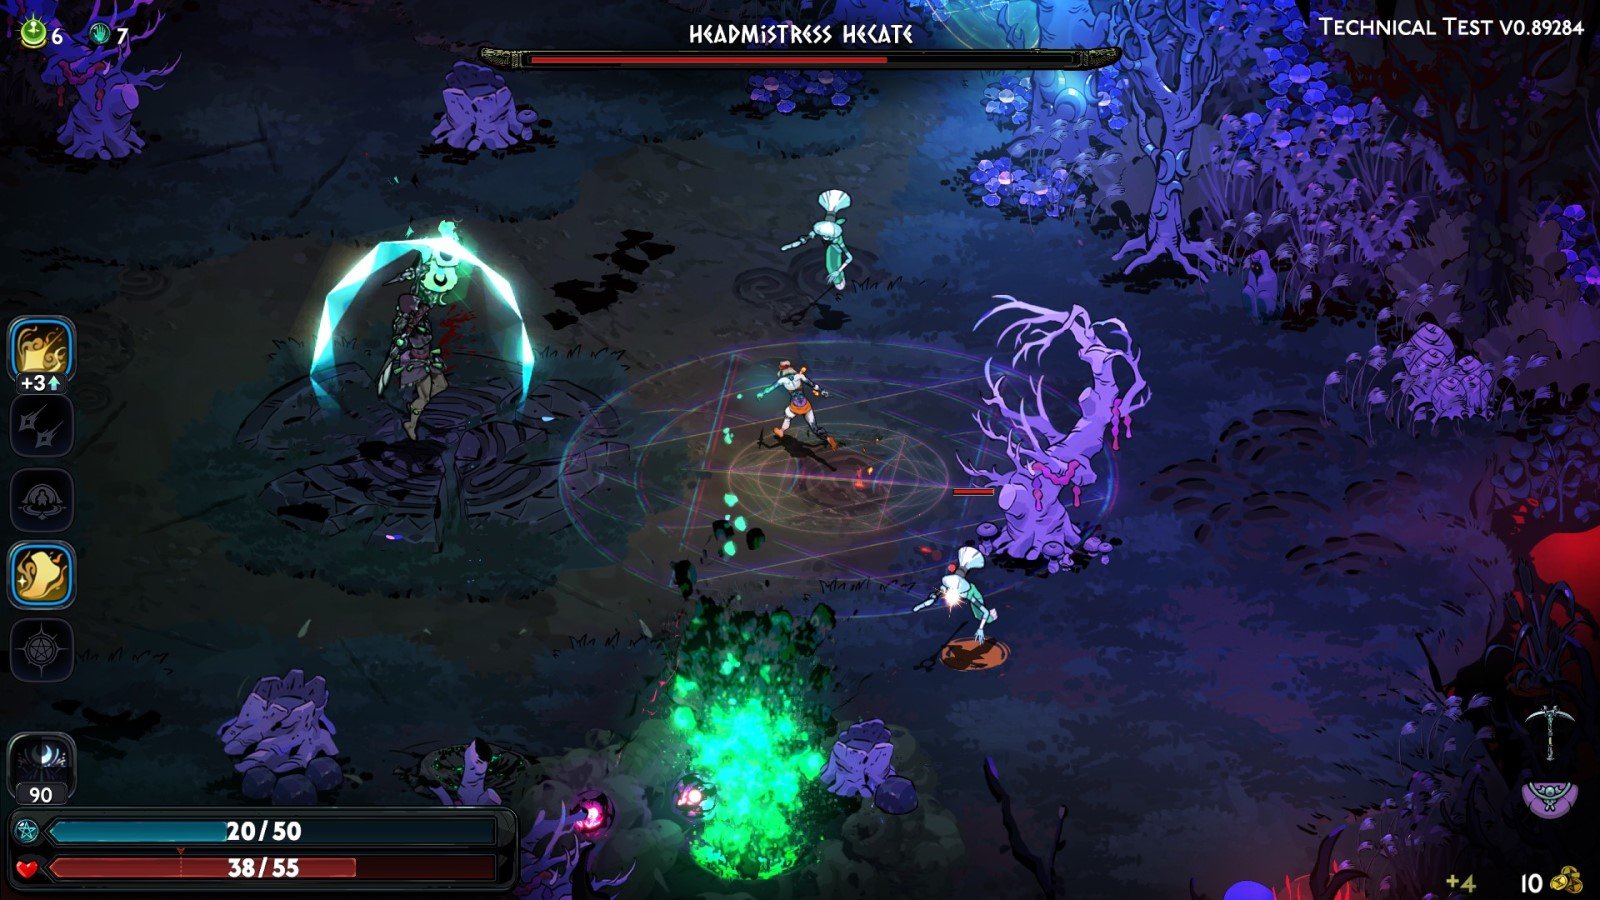 Zrzut ekranu z testu technicznego Hades II, przedstawiający Melinoe podczas walki z bossem przeciwko Hekate.